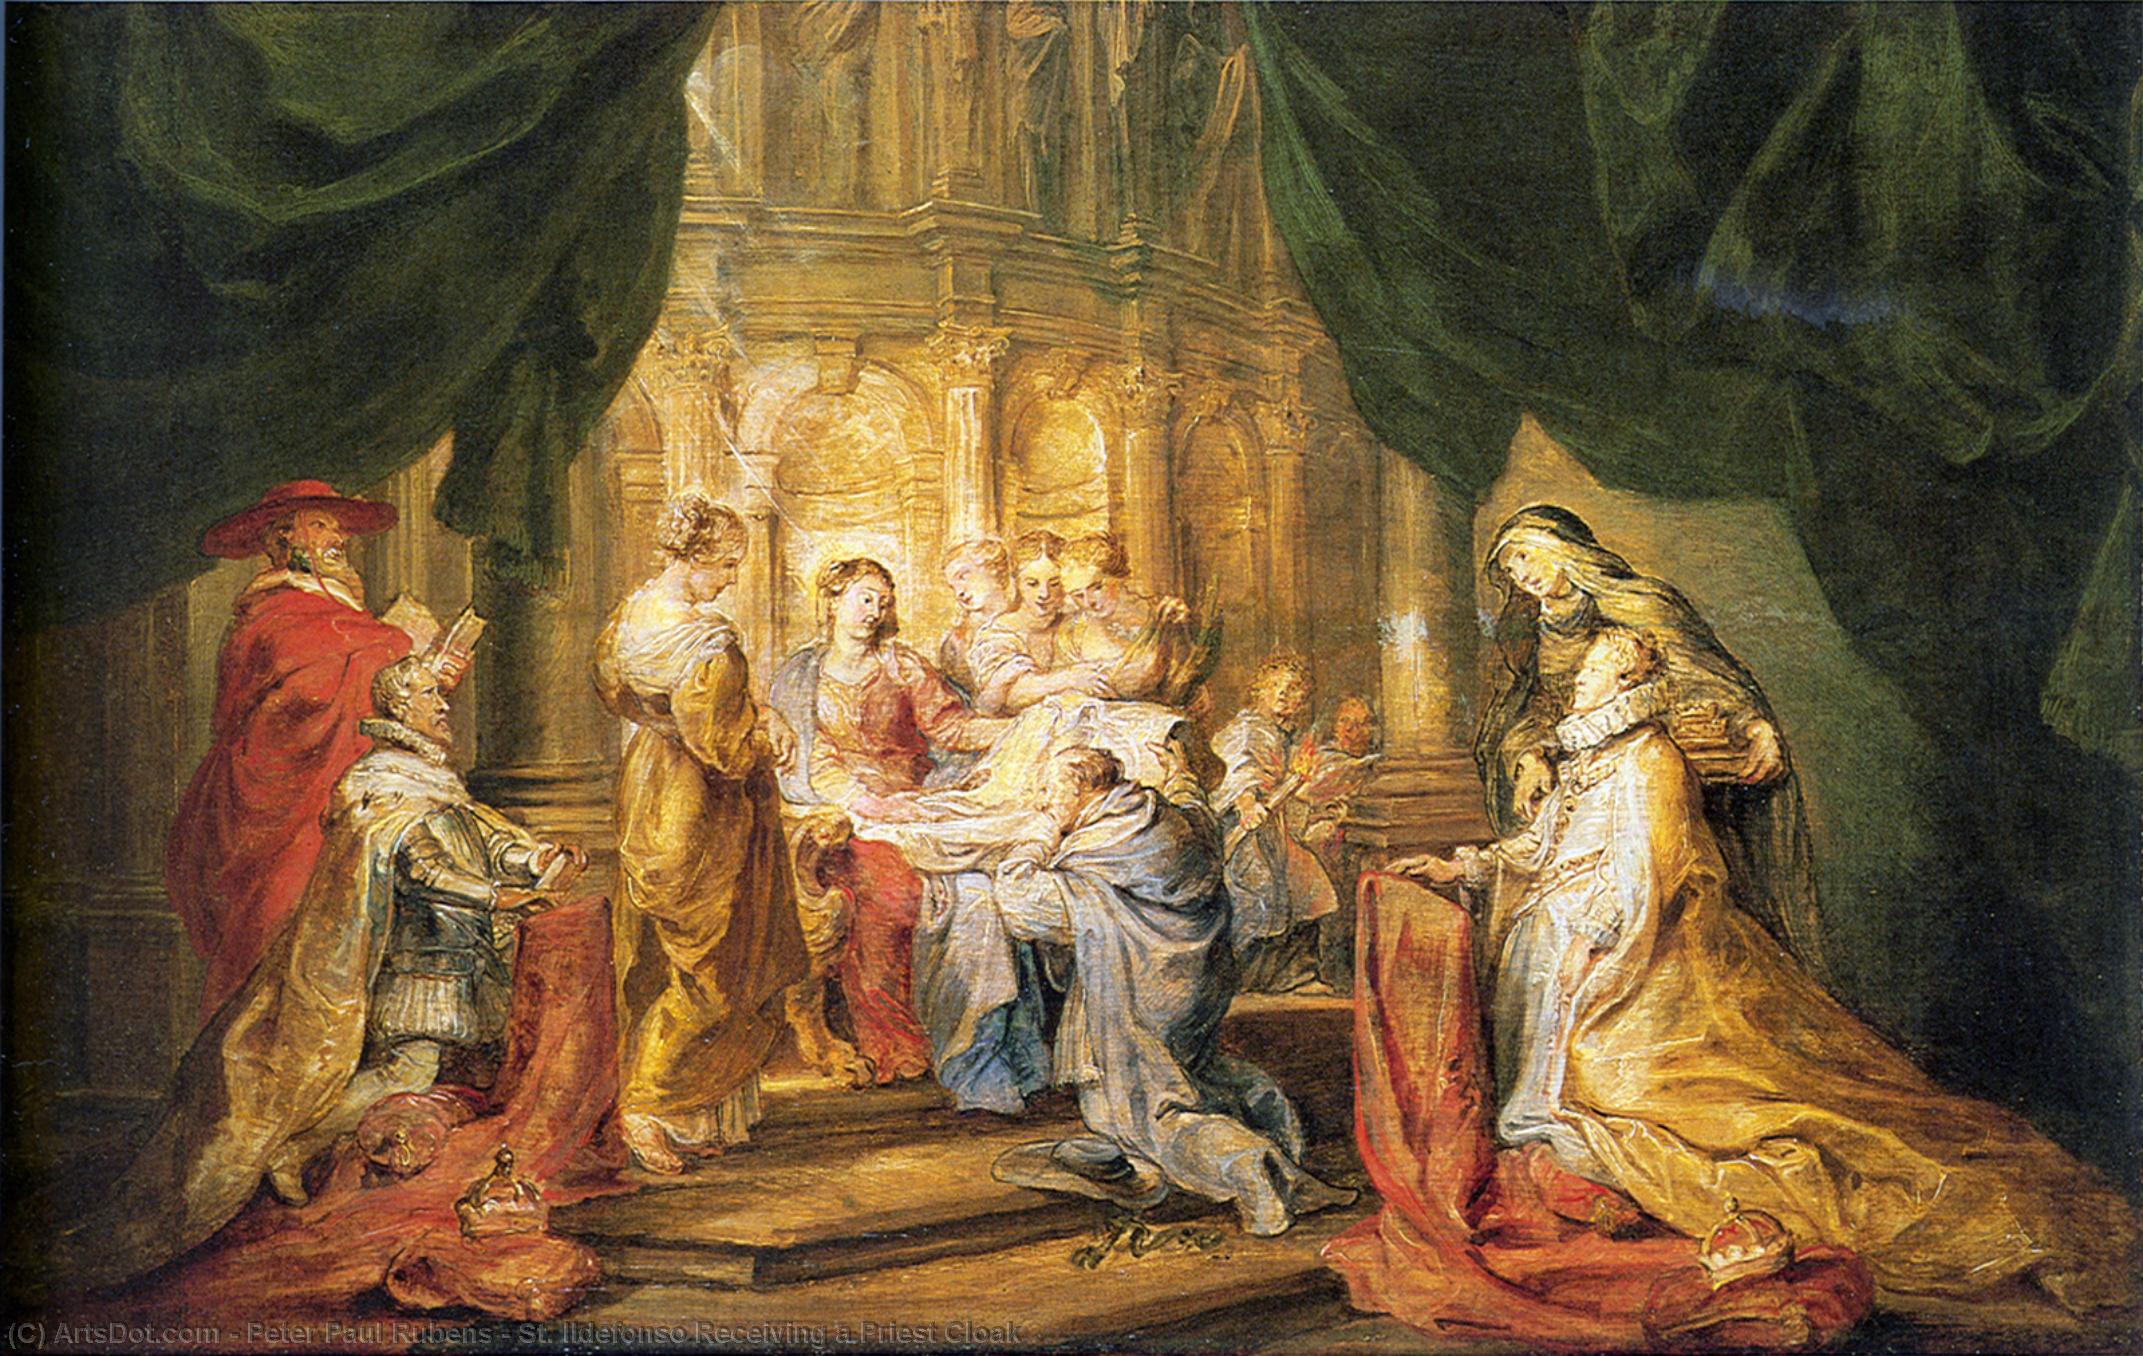 WikiOO.org - Enciclopedia of Fine Arts - Pictura, lucrări de artă Peter Paul Rubens - St. Ildefonso Receiving a Priest Cloak